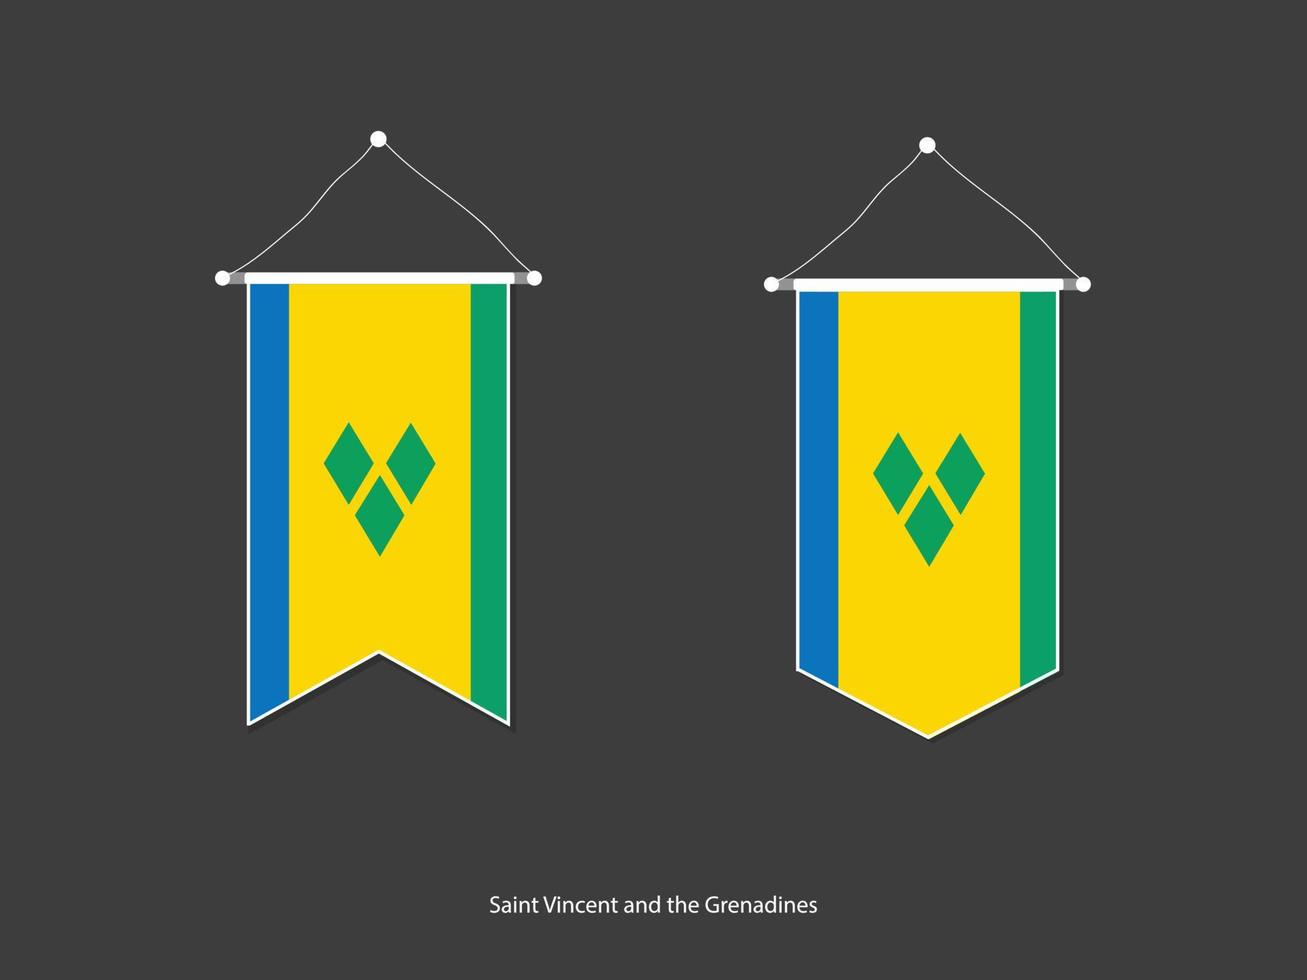 drapeau de saint-vincent-et-les grenadines sous diverses formes, vecteur de fanion de drapeau de football, illustration vectorielle.